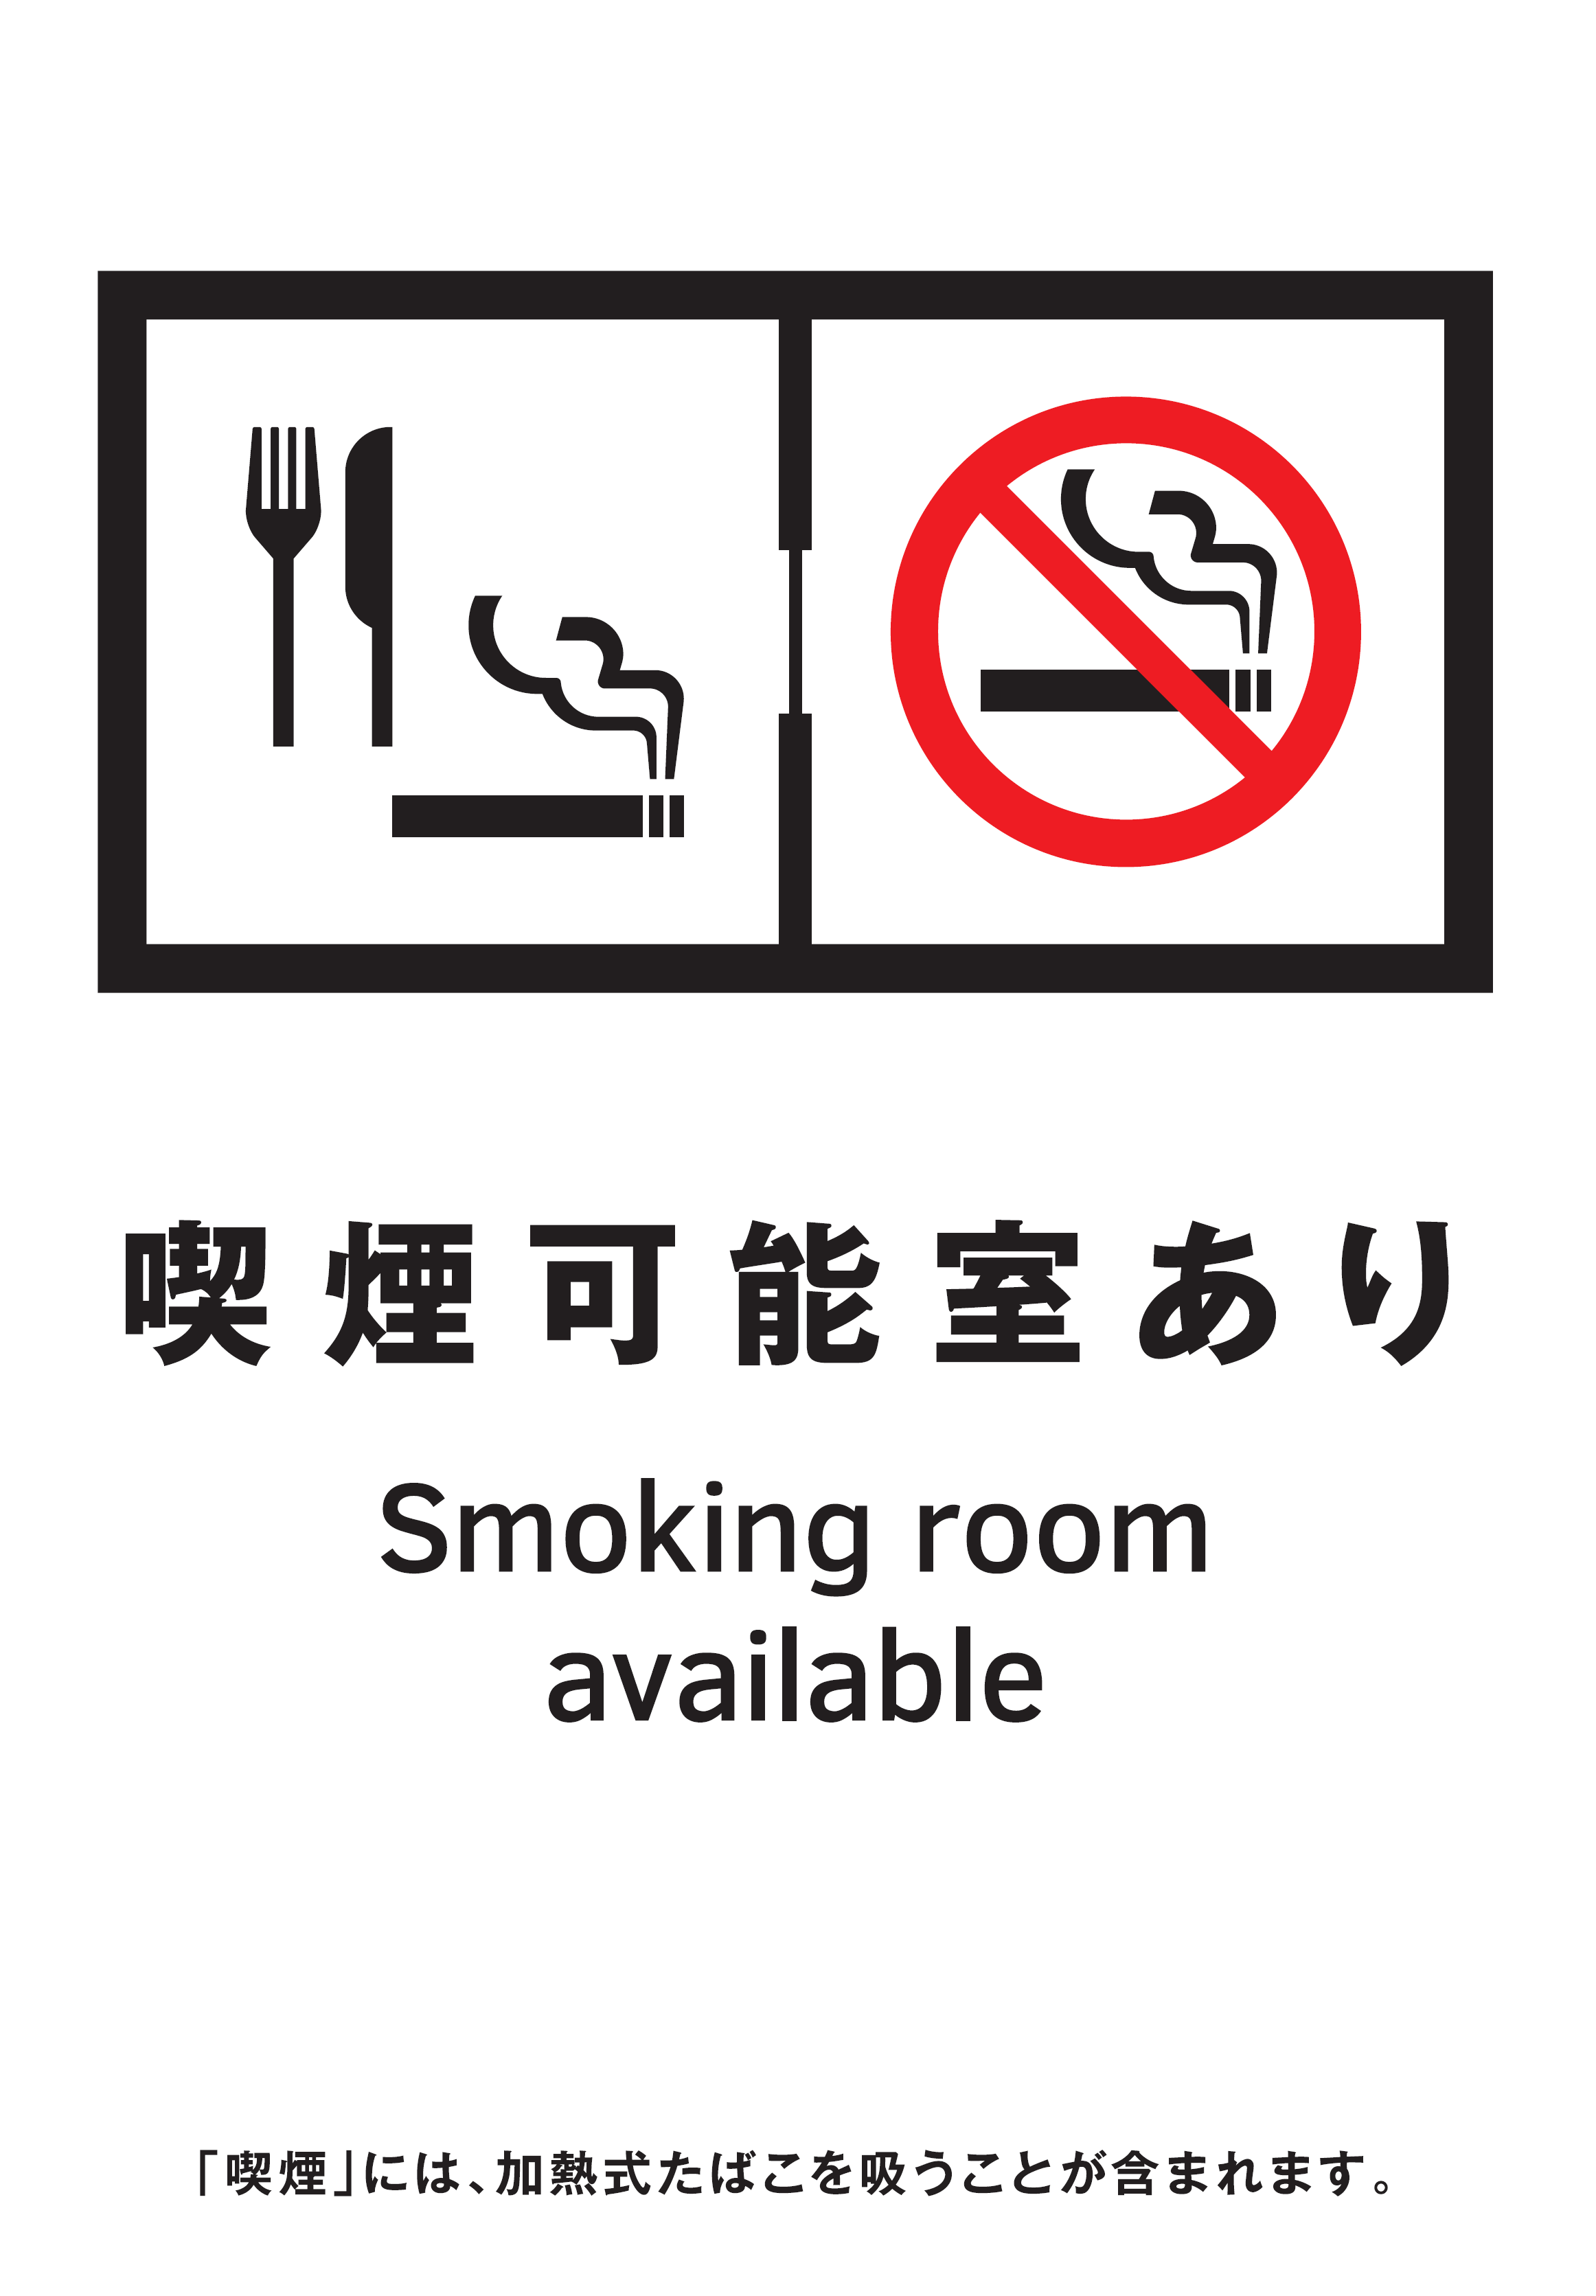 喫煙可能室設置施設の標識